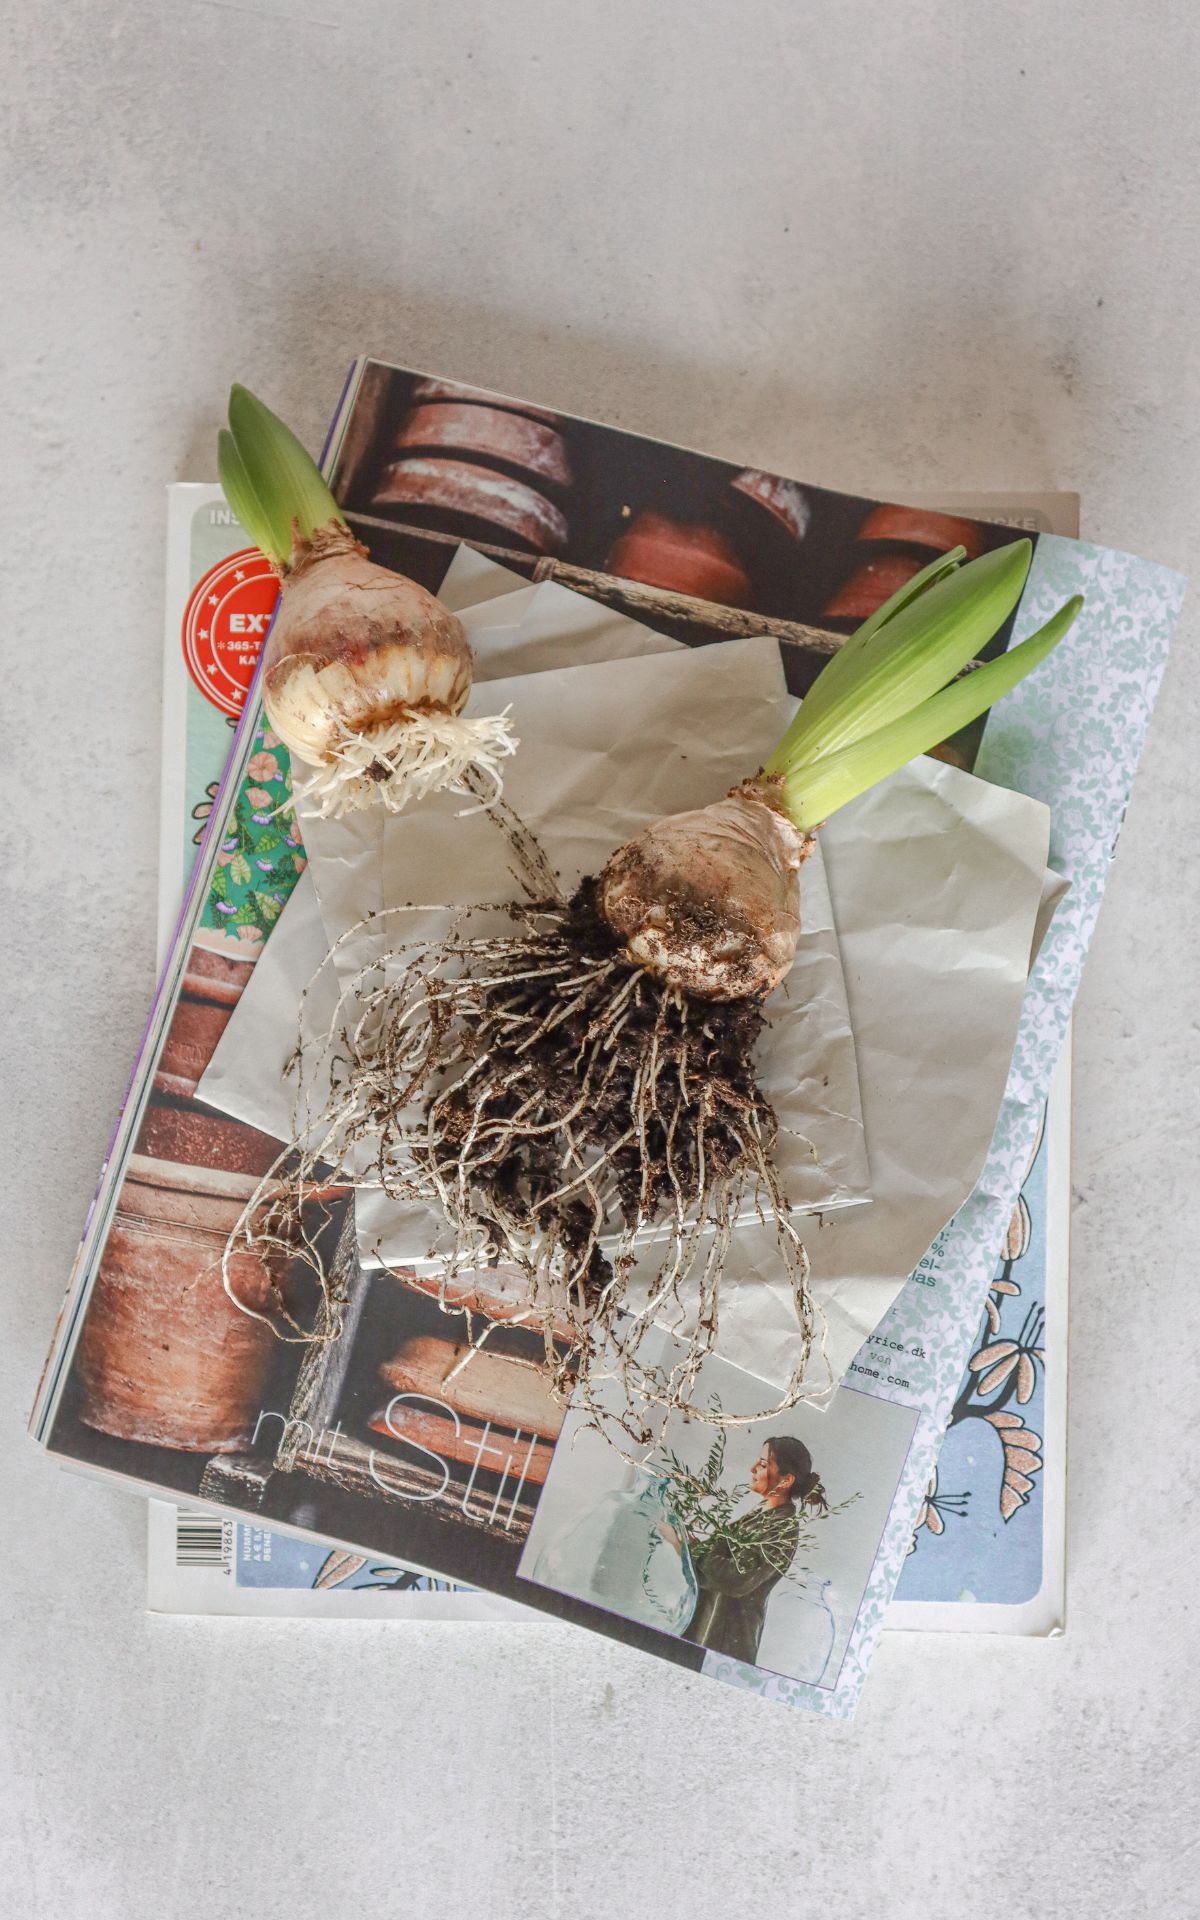 Nie wieder Blumen gießen mit Hyazinthen in Wachs, Moos und Papier! So machst du Wachs Hyazinthen einfach selber - auch mit anderen Blumenzwiebeln wie z.B. Amaryllis. Eine pflegeleichte DIY Frühlingsdeko & Geschenkidee. | Hyazinthen in Wachs, Moos und Papier - Meine DIY Frühlingsdeko bekannt aus SWR Kaffee oder Tee